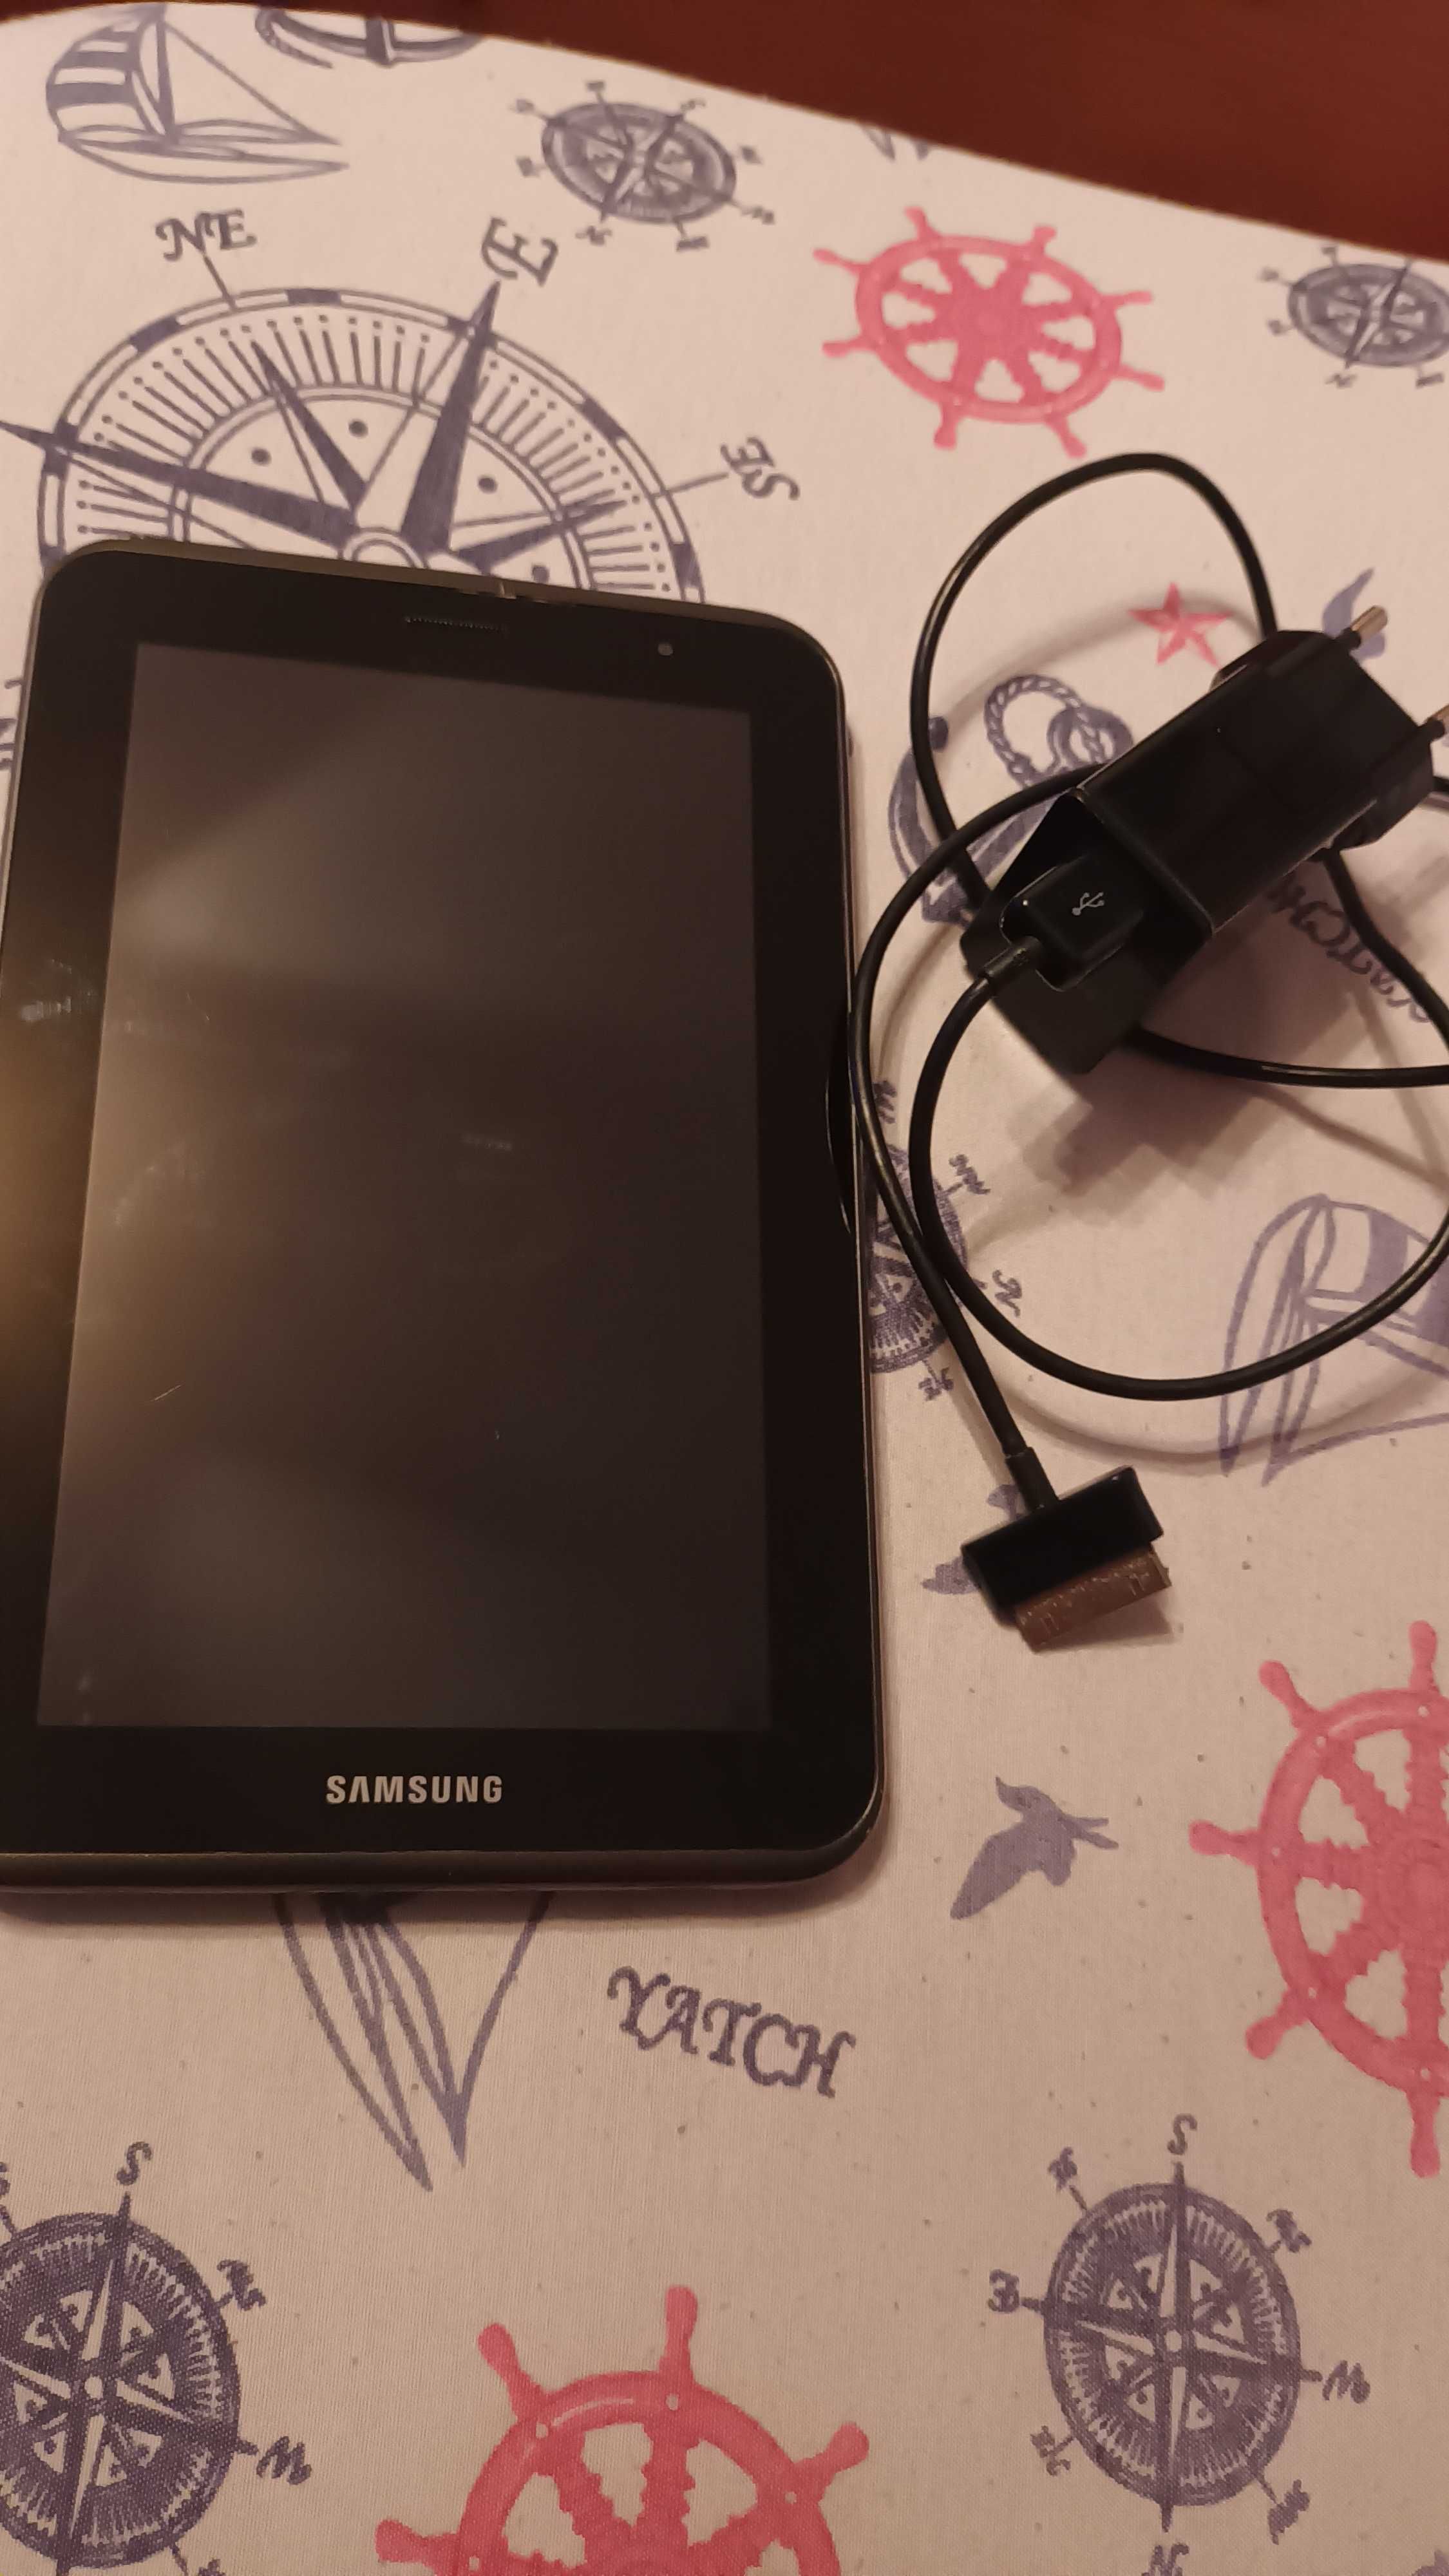 Samsung tab GT-P3100